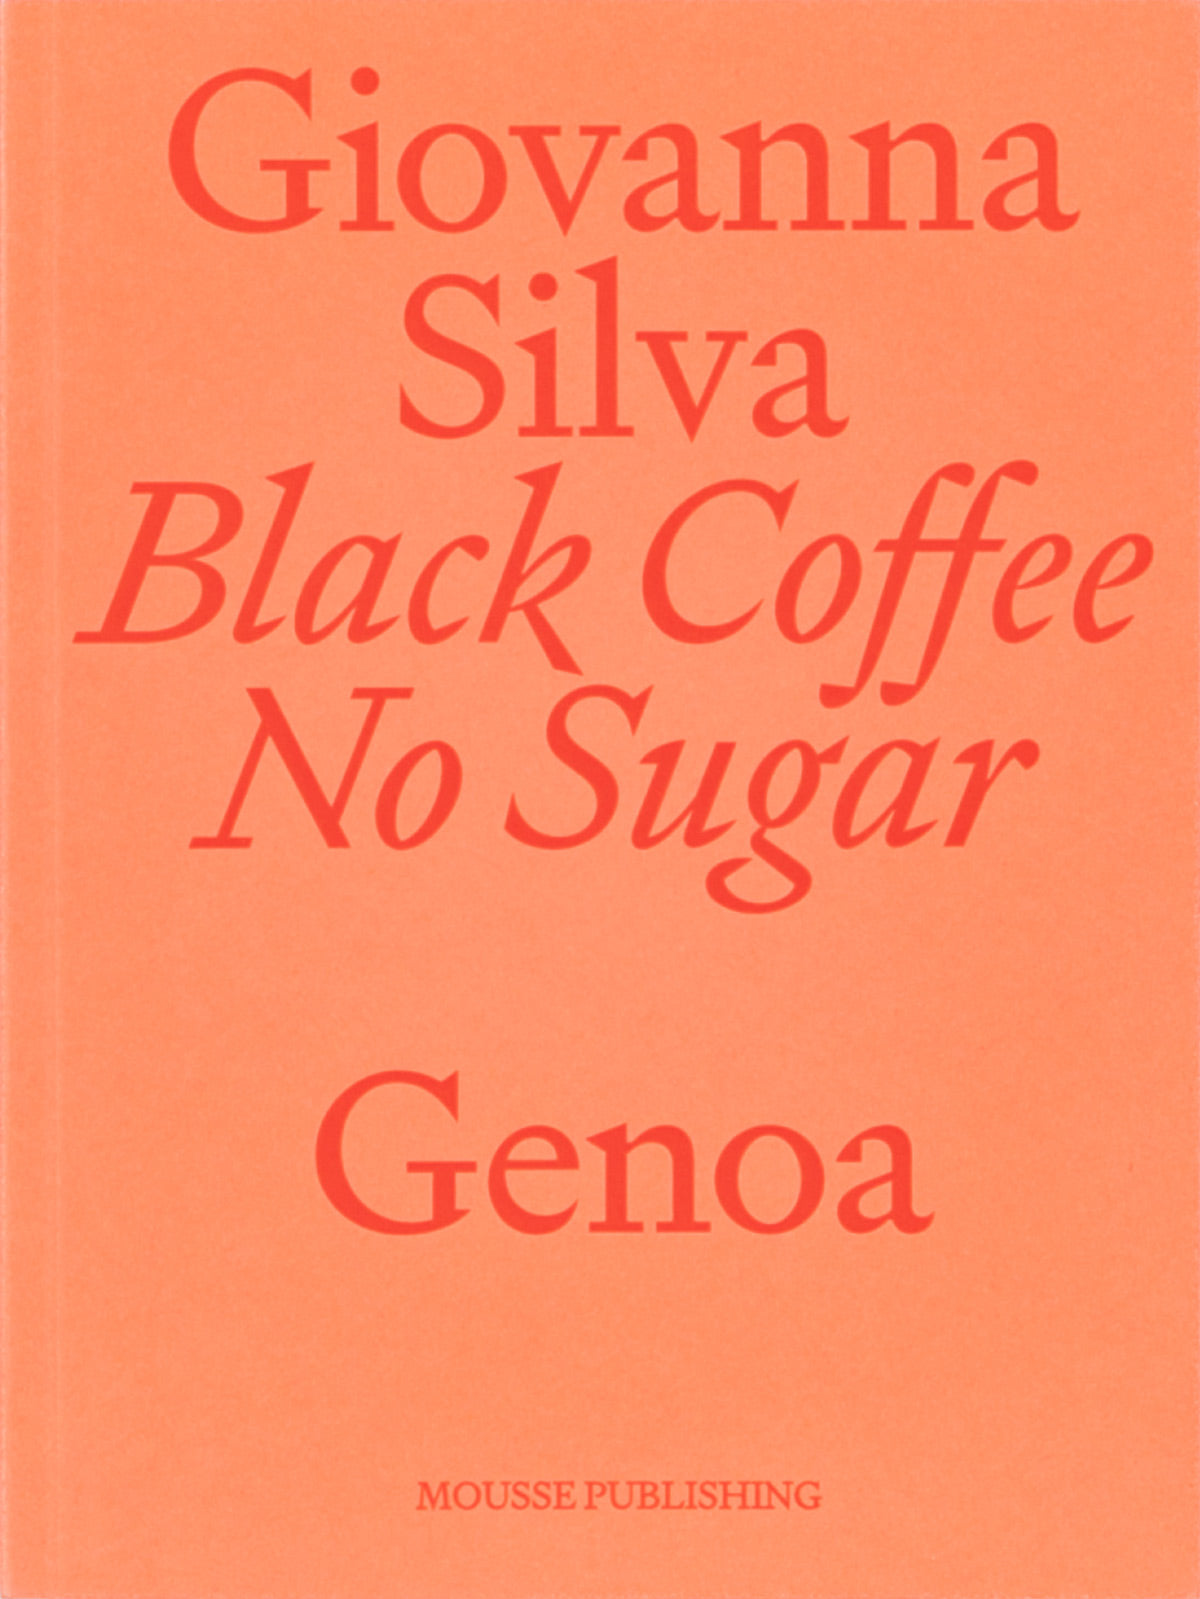 Black Coffee No Sugar – Genoa